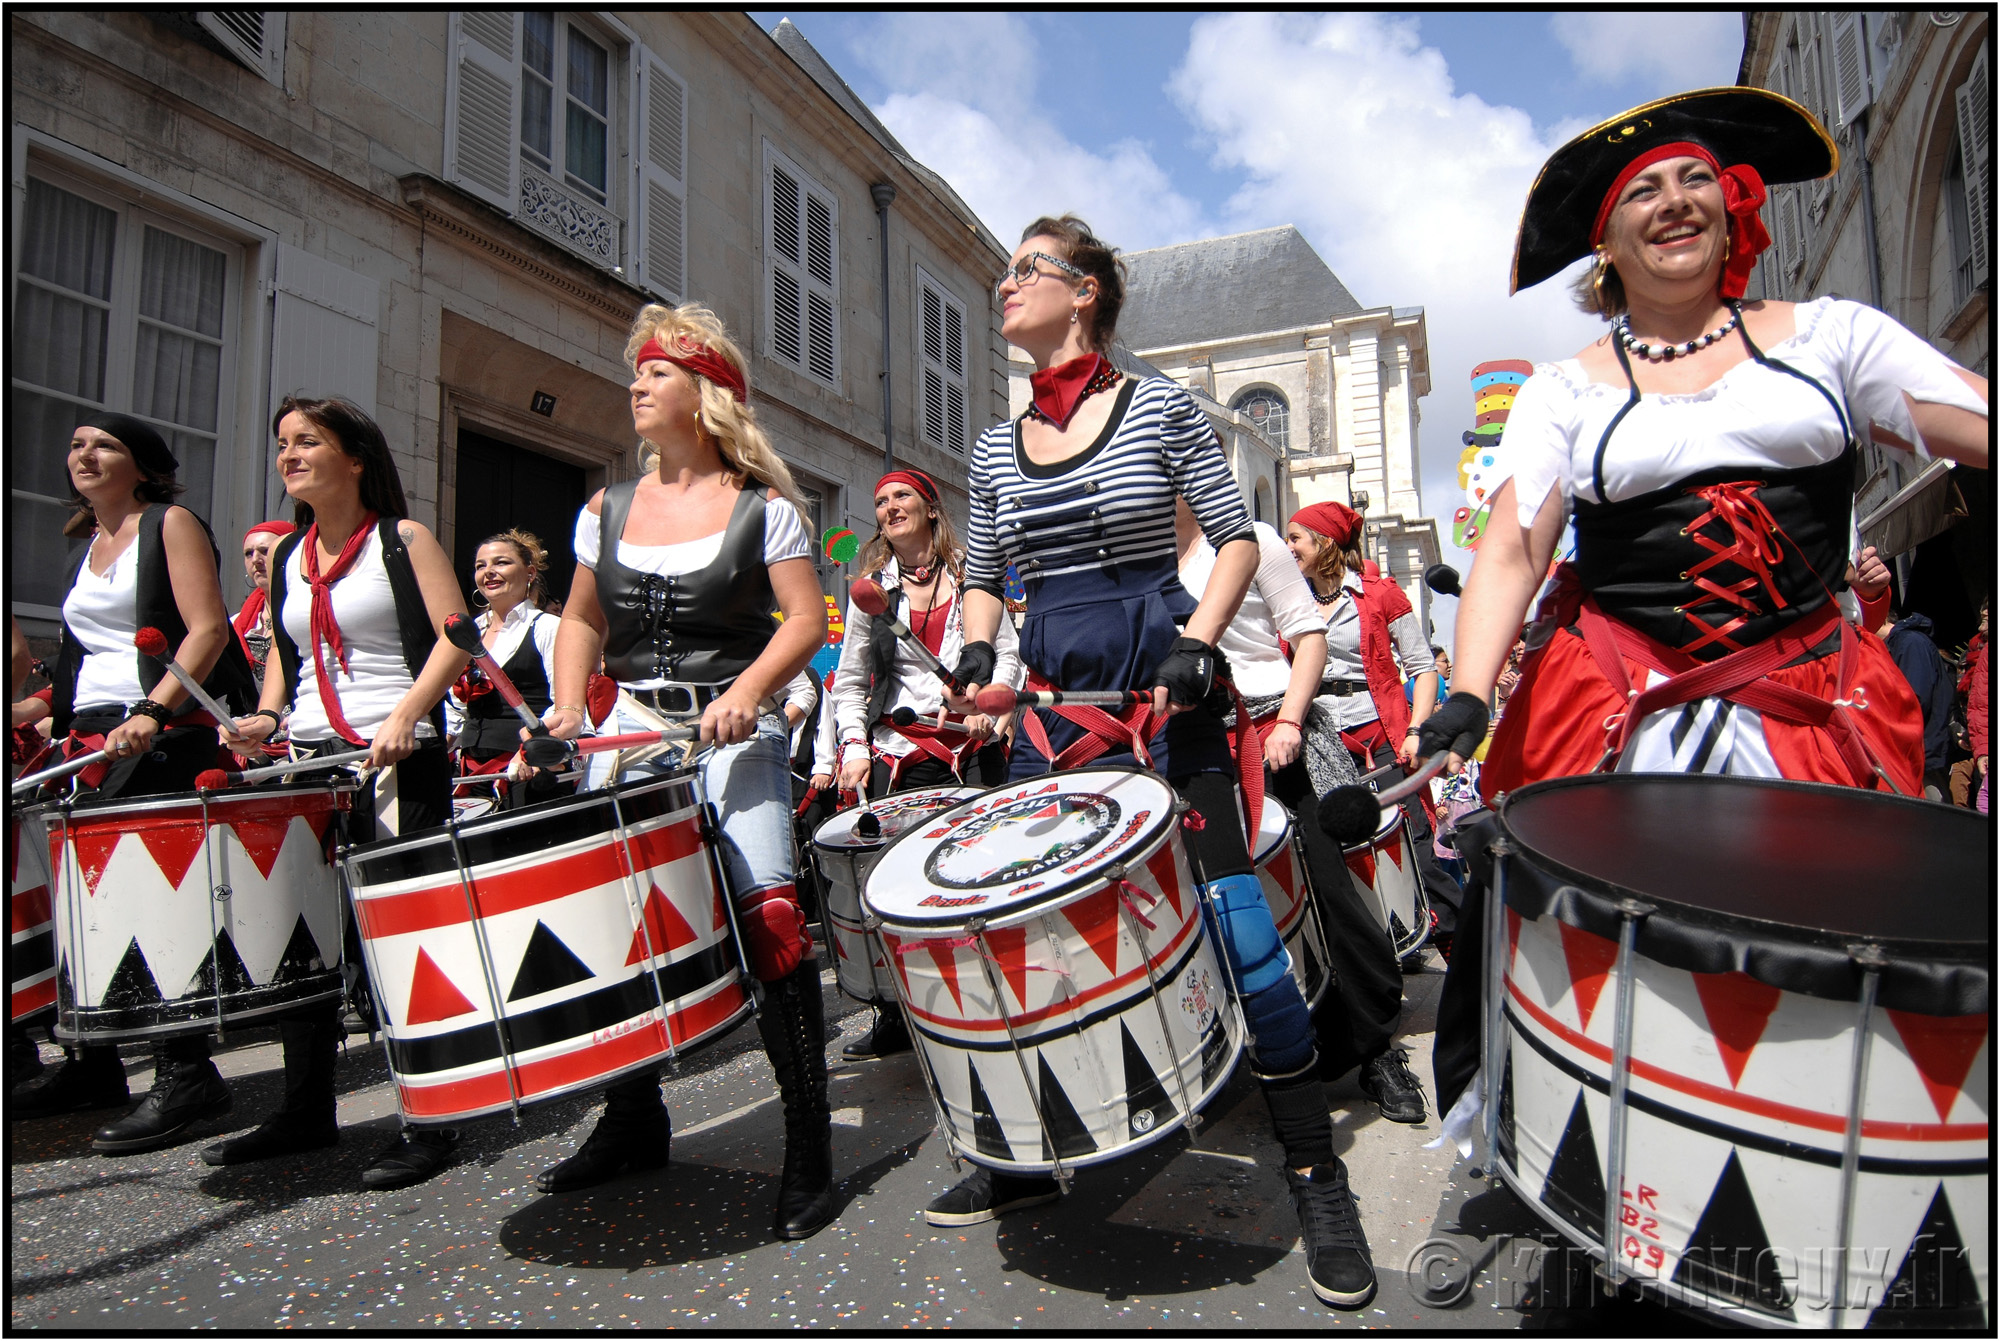 kinenveux_21_carnaval2015lr.jpg - Carnaval des Enfants 2015 - La Rochelle